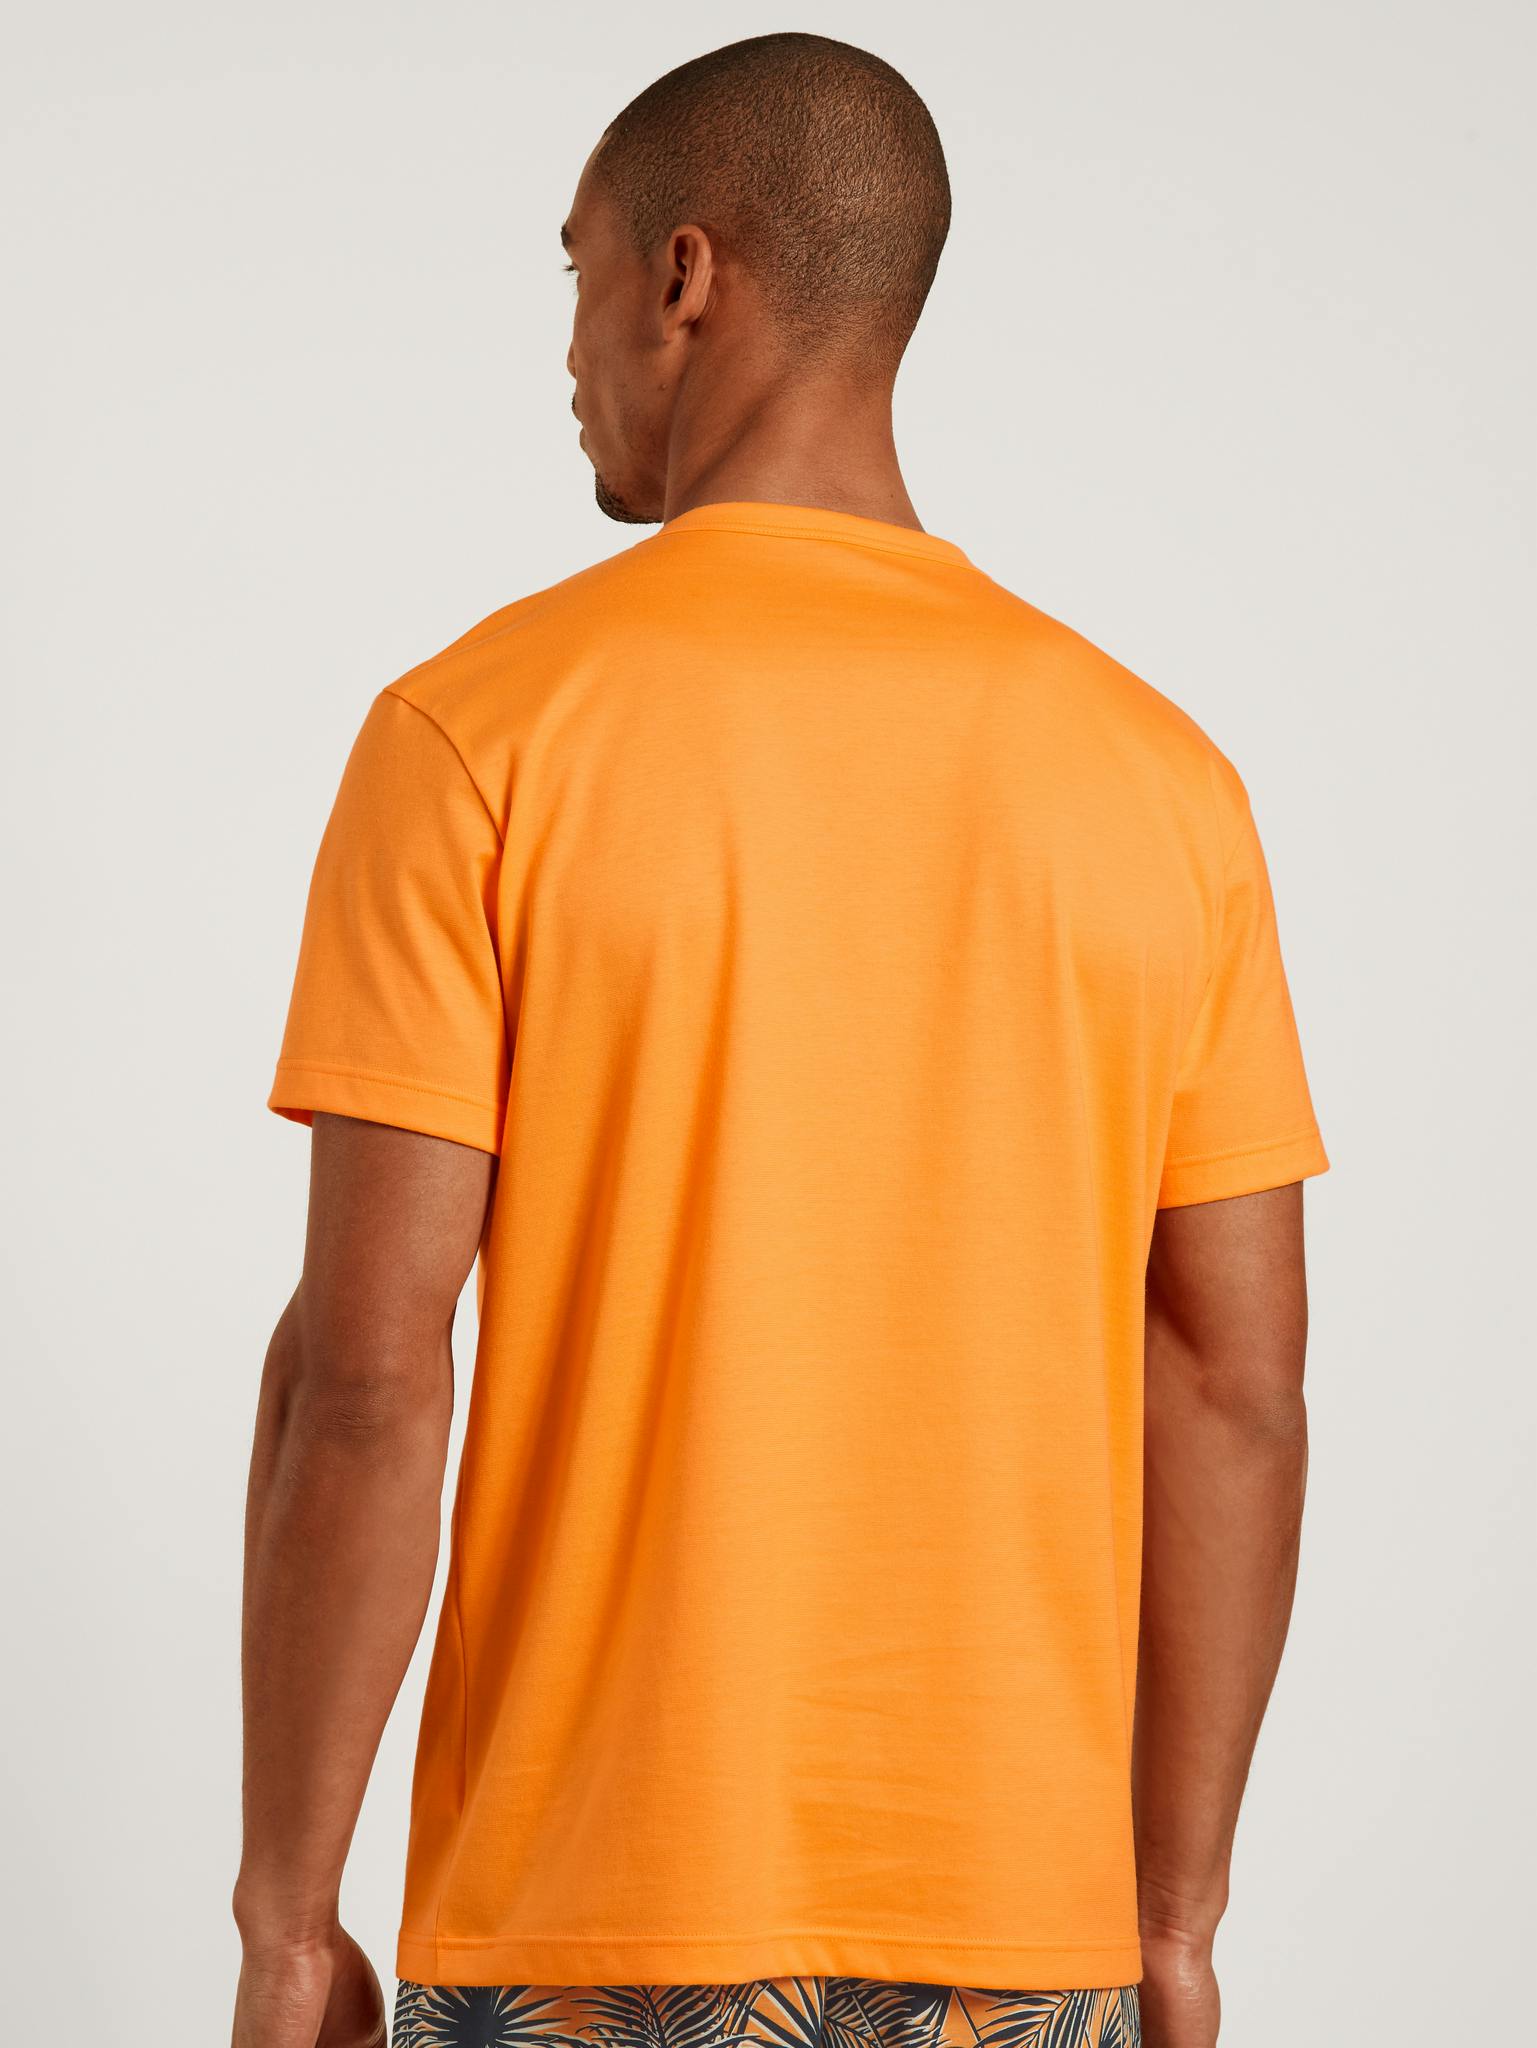 Calida T-shirt Remix herr 14569 055 blazing orange - Näckrosen Underkläder